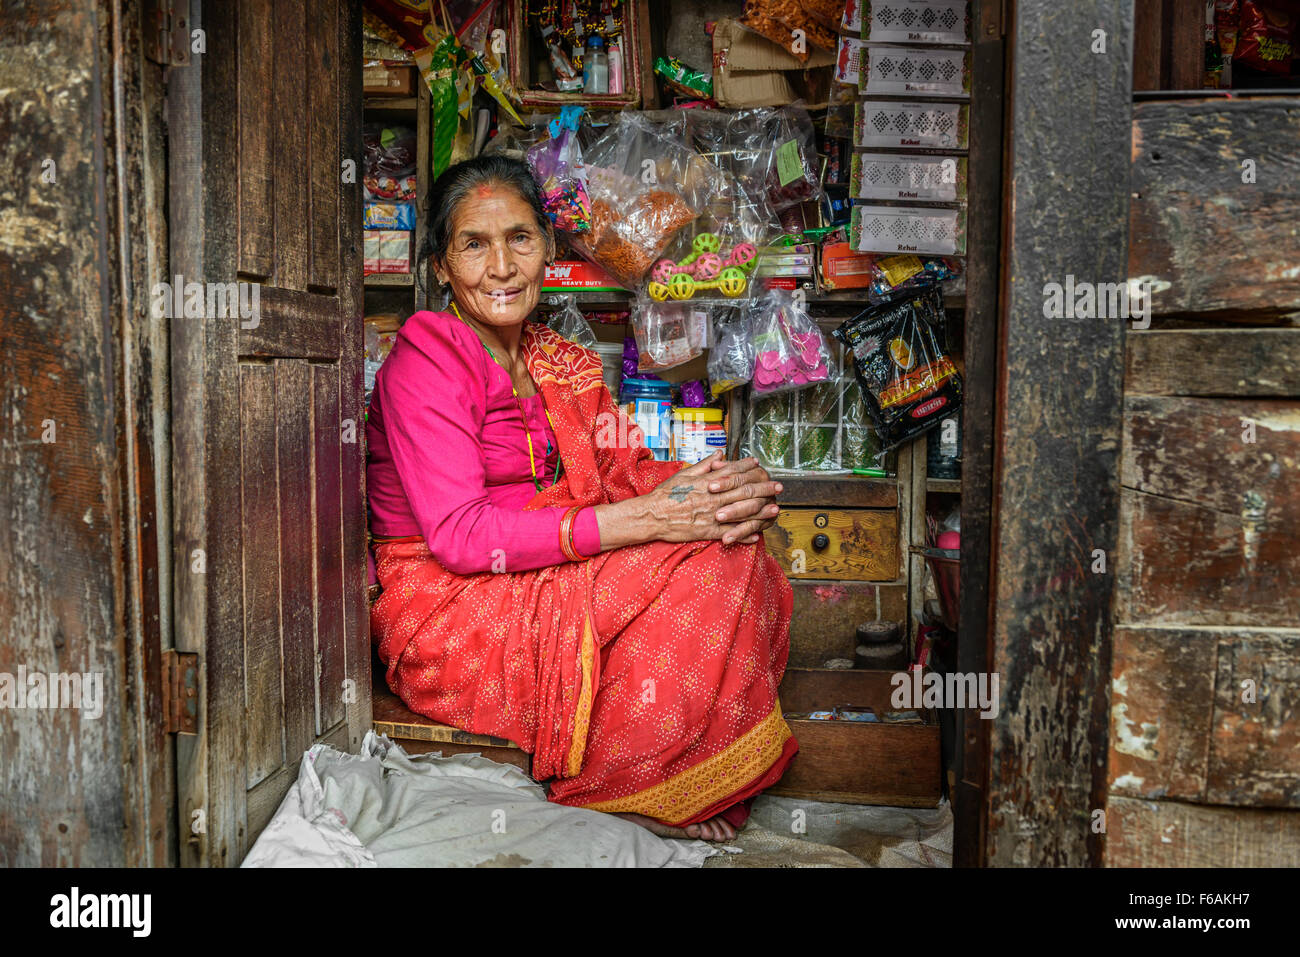 Vieille dame népalaise vend des marchandises dans son magasin. Banque D'Images